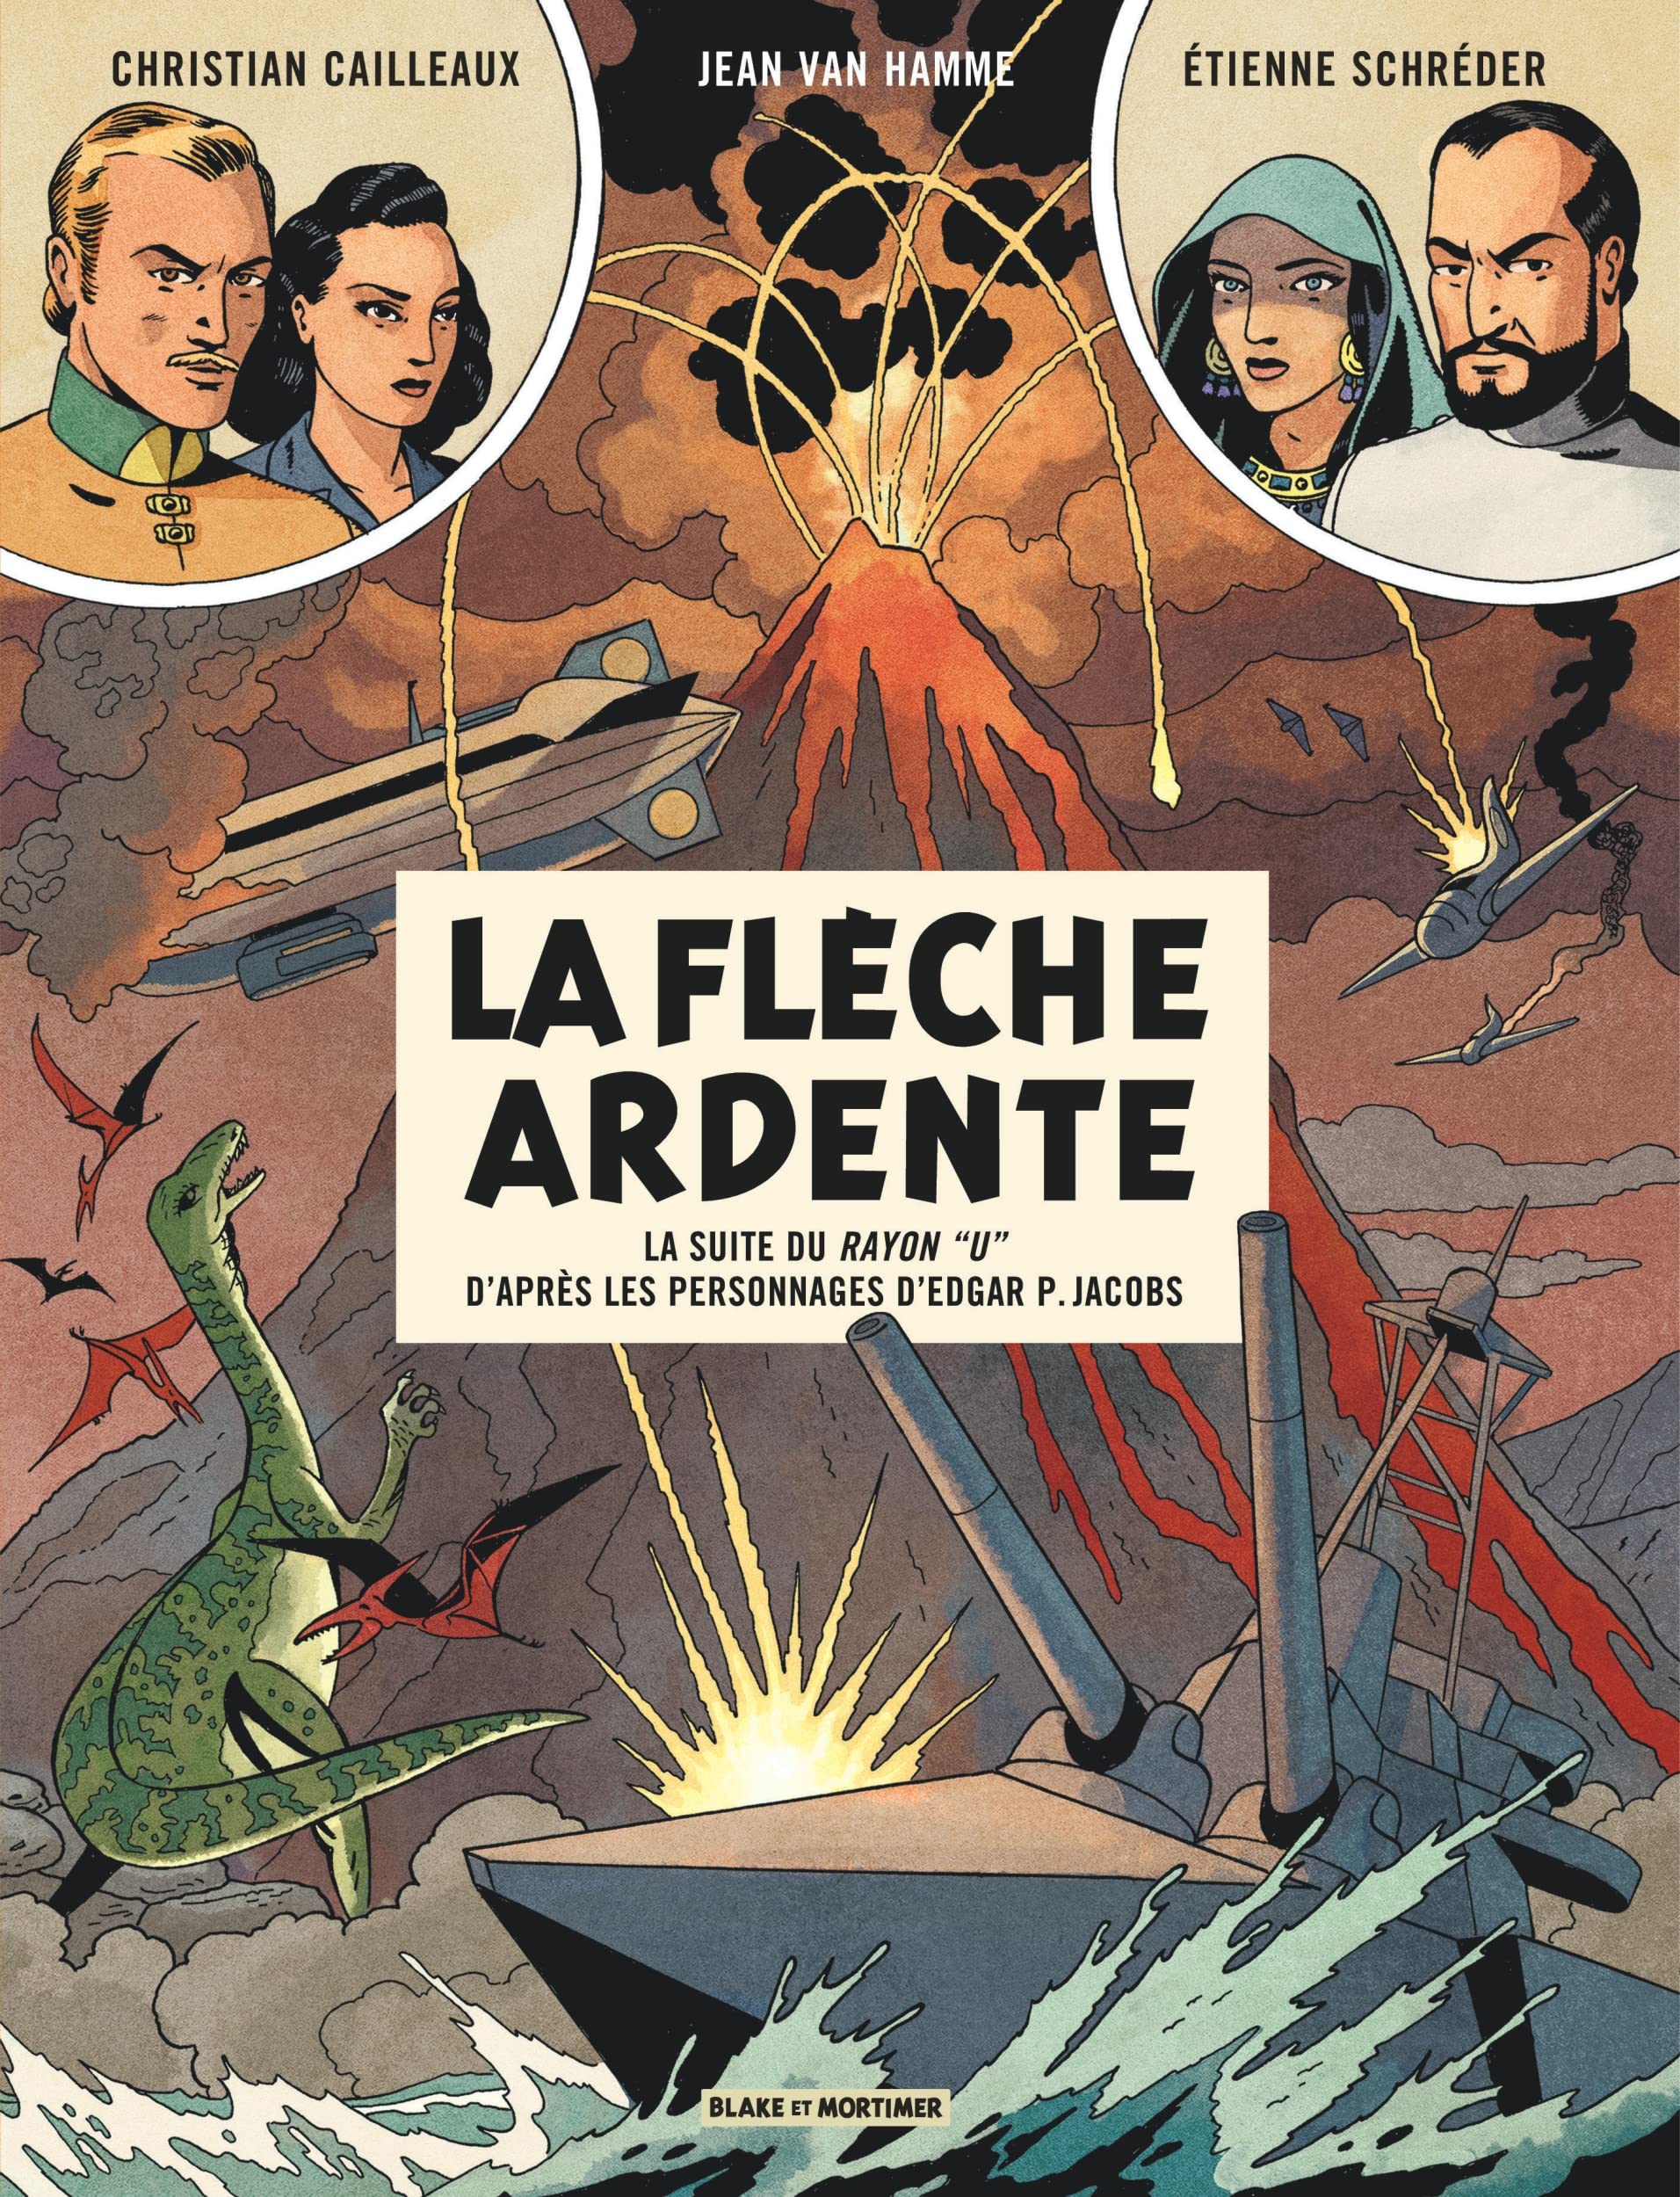 Jean Van Hamme, Christian Cailleaux, Étienne Schréder: La flèche ardente (GraphicNovel, French language, Blake et Mortimer)